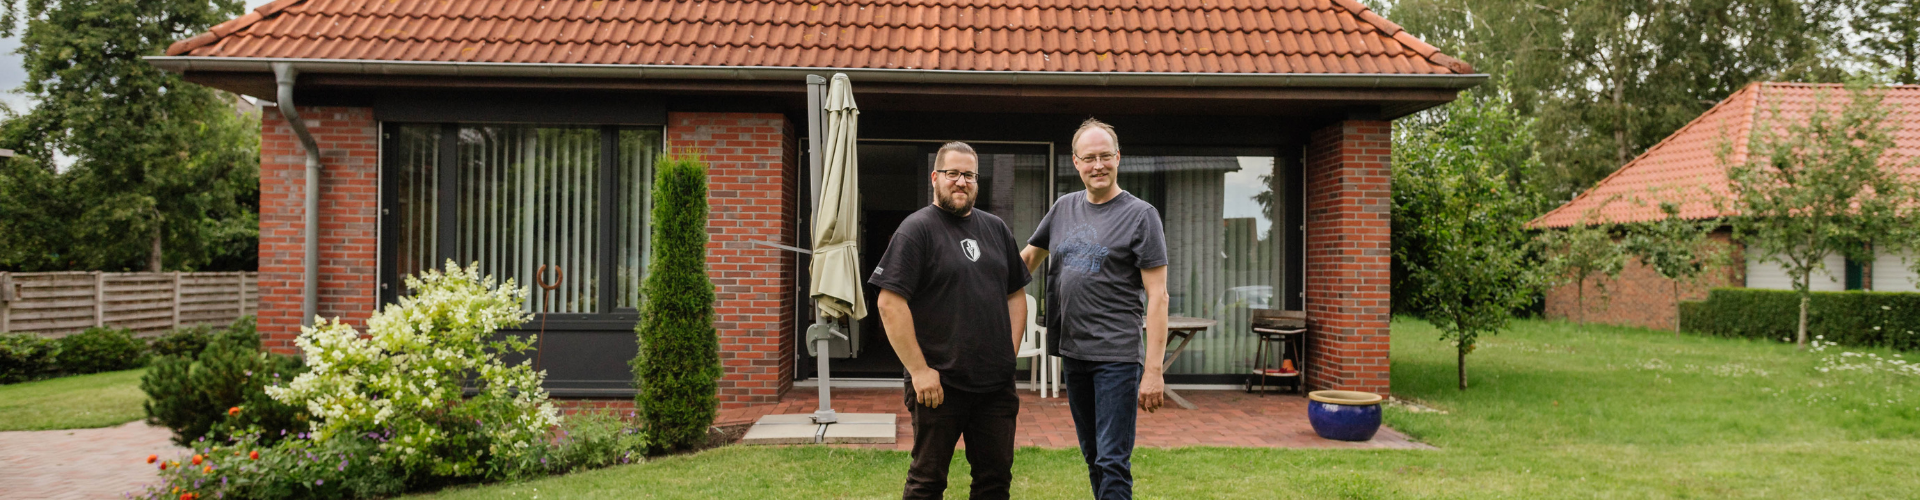 Zwei Männer stehen nebeneinander vor einem Haus auf einer grünen Rasenfläche und lachen in die Kamera.